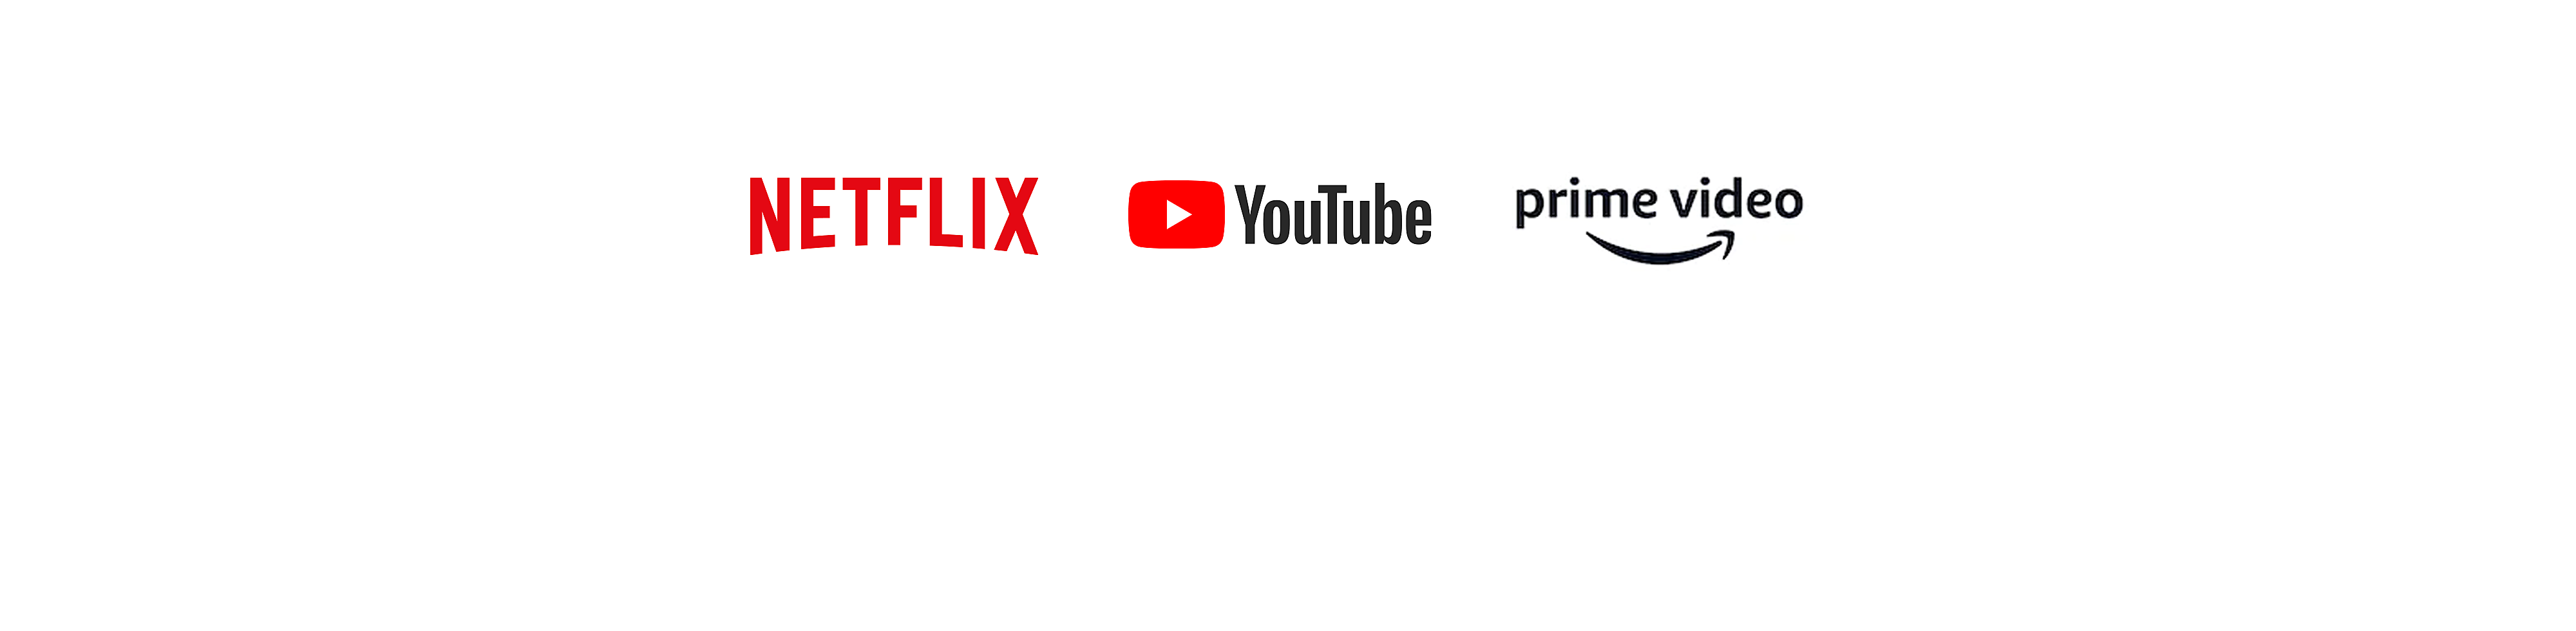 Logotipi za Netflix, YouTube i Amazon prime video